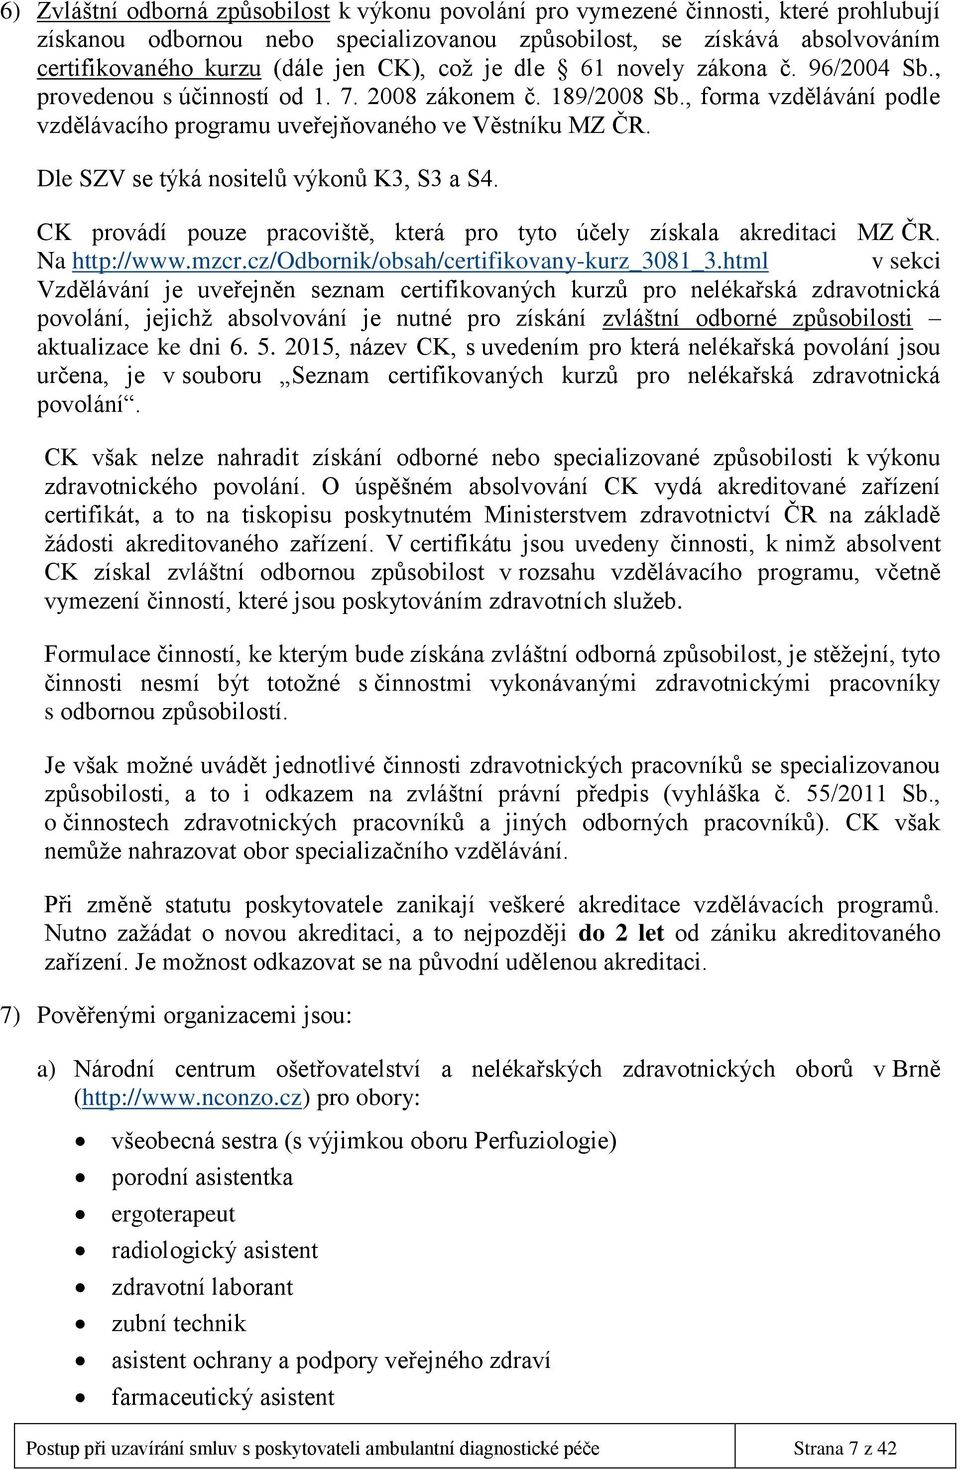 Dle SZV se týká nositelů výkonů K3, S3 a S4. CK provádí pouze pracoviště, která pro tyto účely získala akreditaci MZ ČR. Na http://www.mzcr.cz/odbornik/obsah/certifikovany-kurz_3081_3.